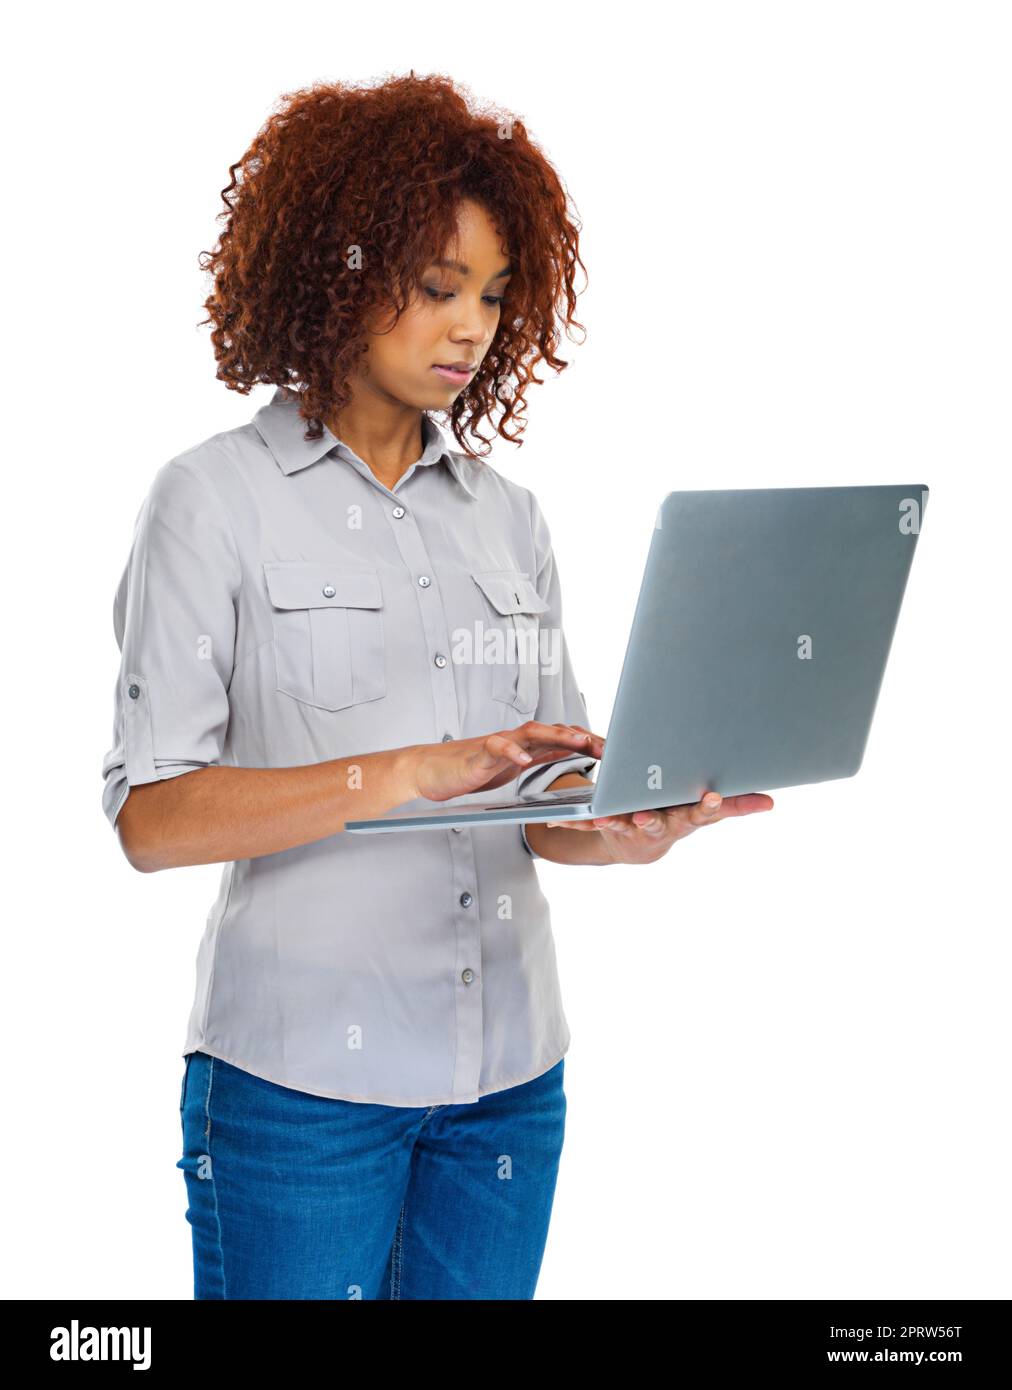 Modernes Leben und moderne Technik. Eine junge Frau, die einen Laptop auf Weiß isoliert verwendet. Stockfoto